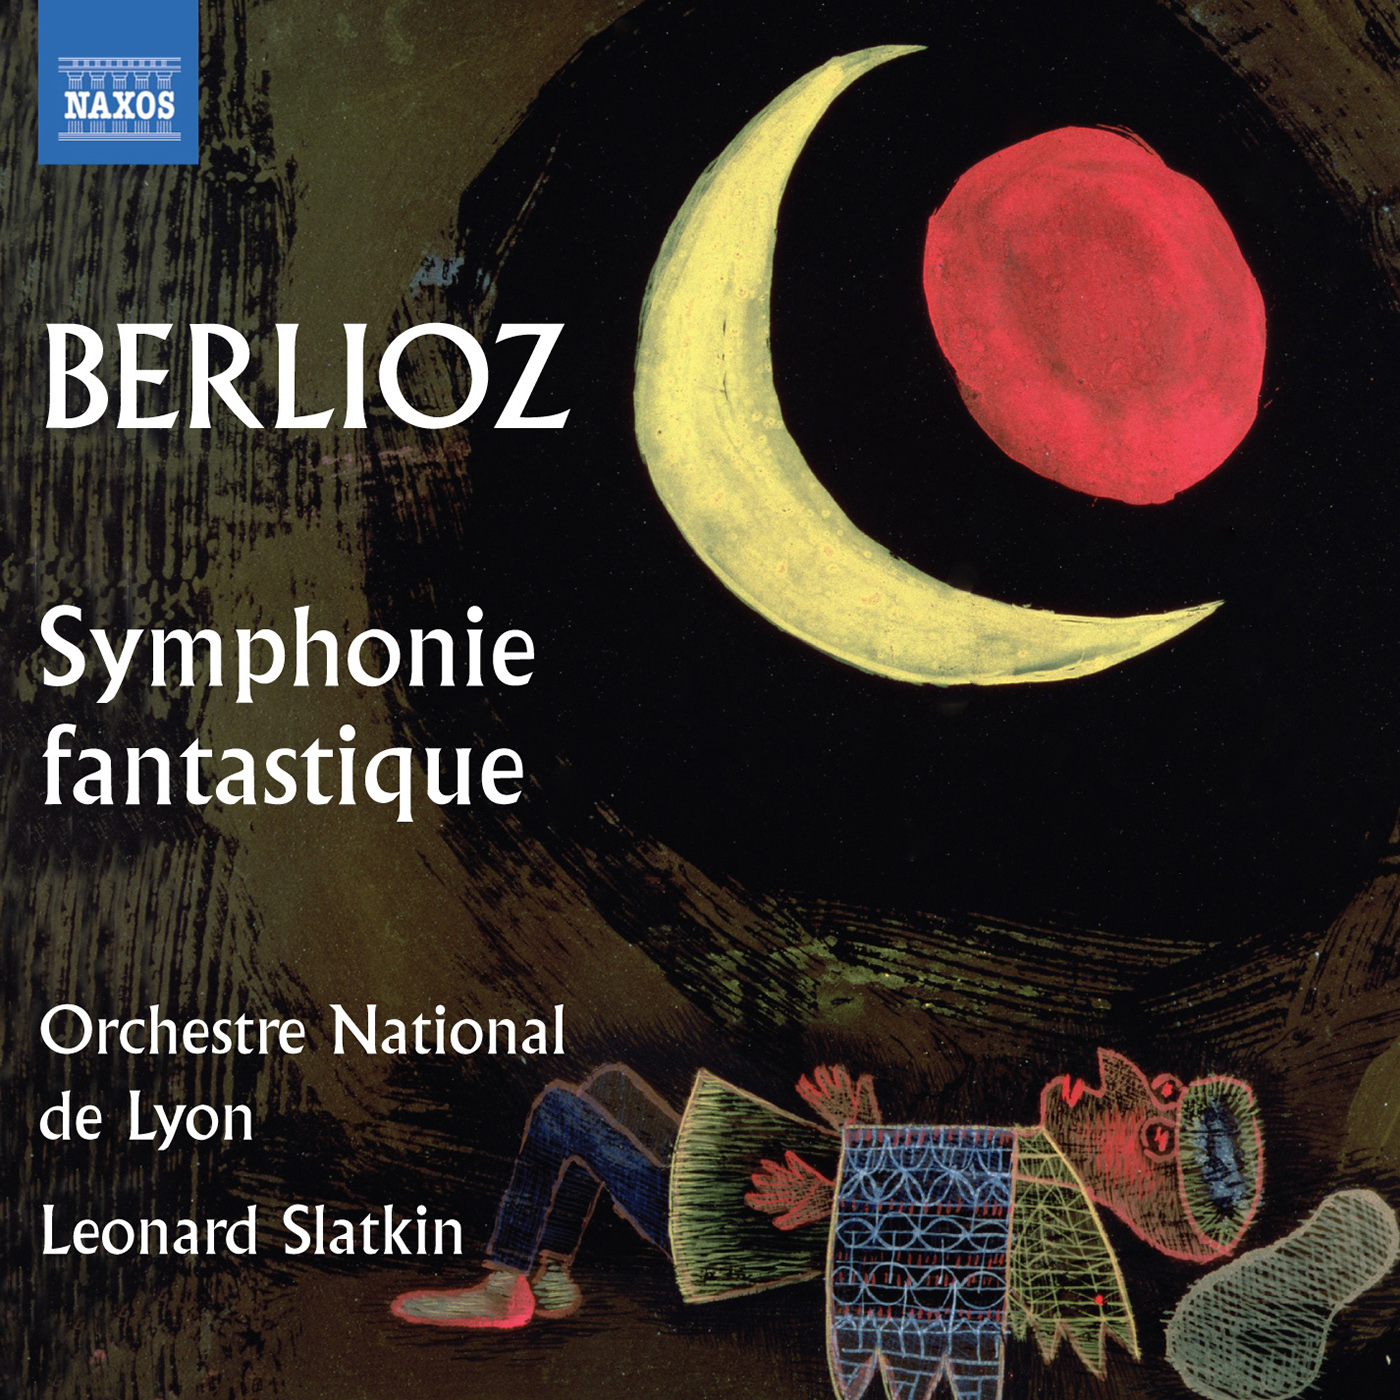 Symphonie fantastique, Op. 14: II. Un Bal (Valse): Allegro non troppo (version with cornet obbligato)